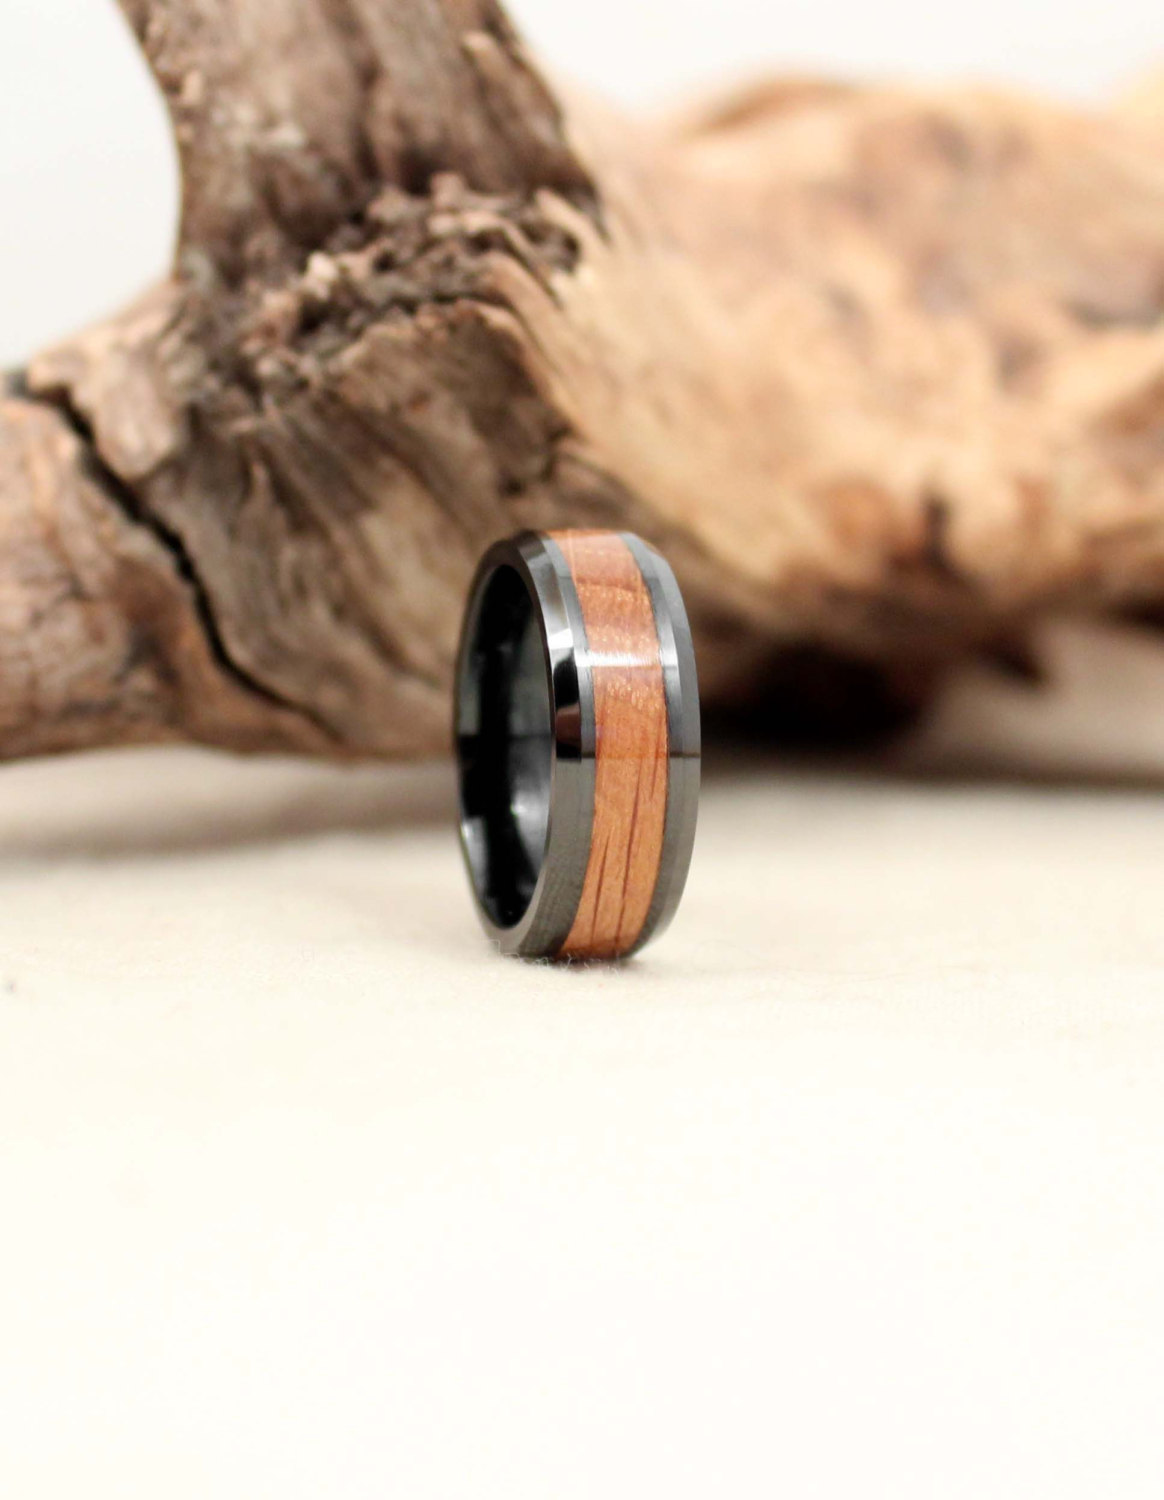 Ebony Wooden Ring